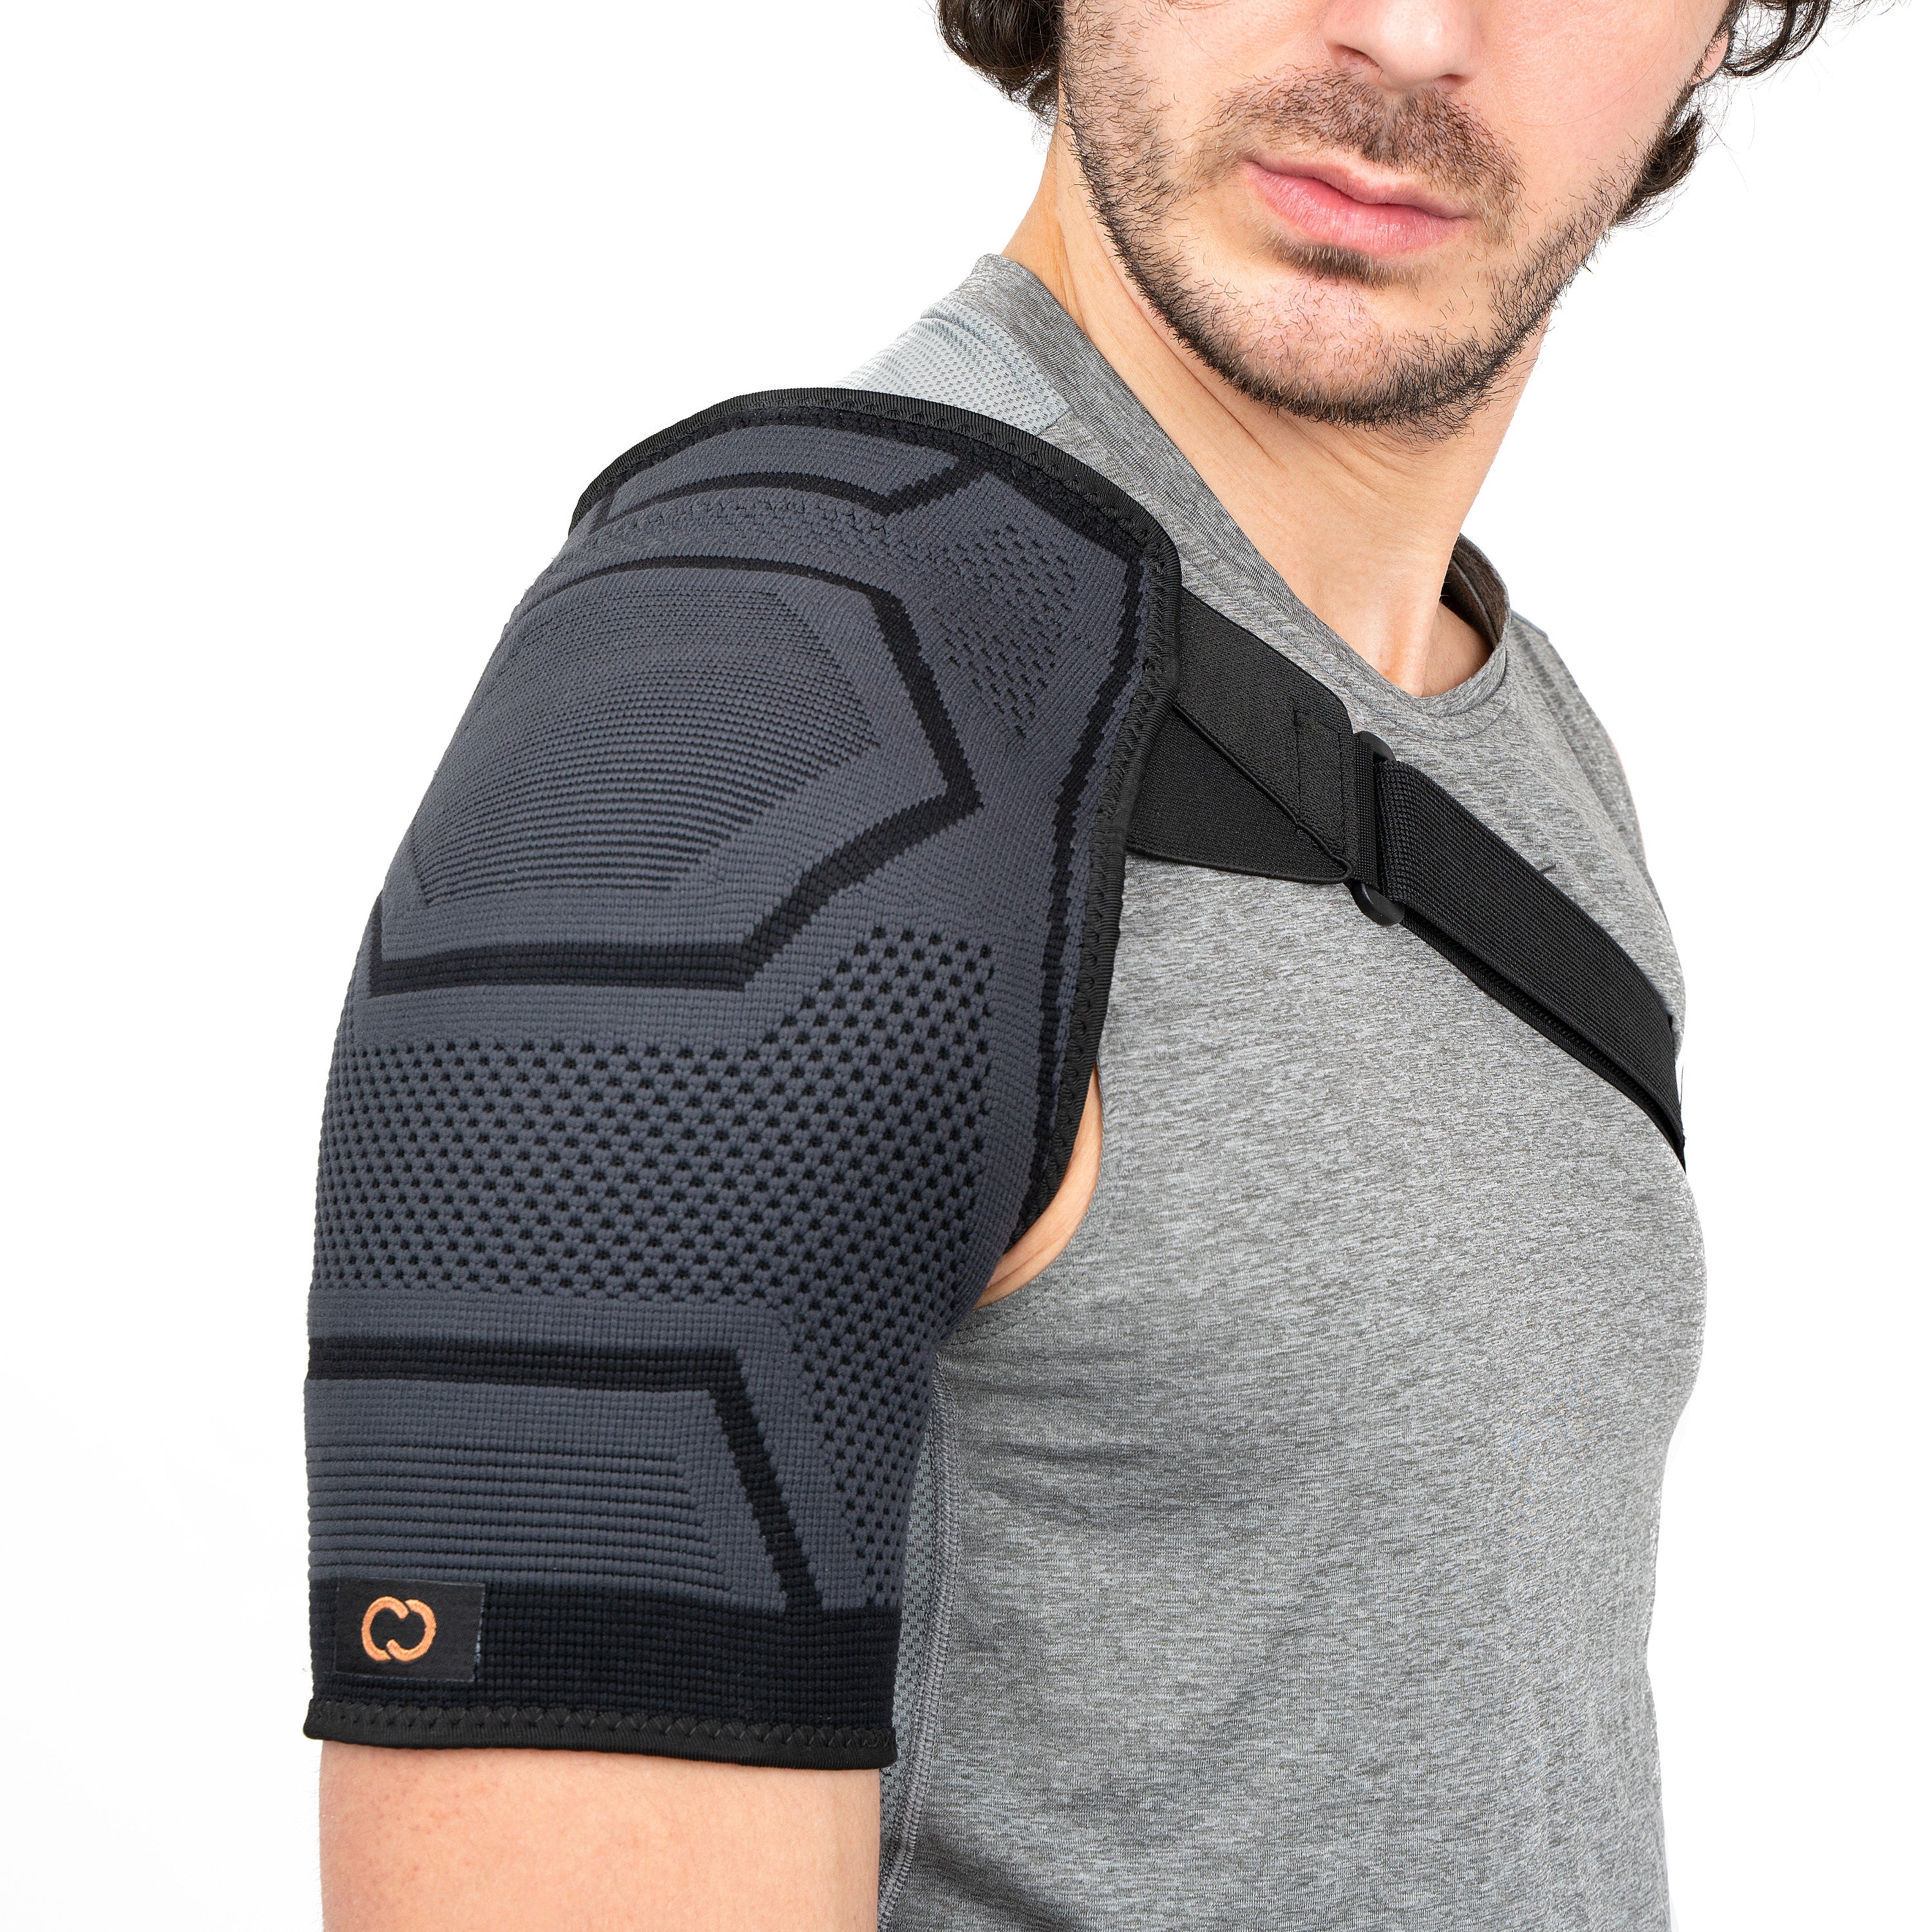 COPPER HEAL Shoulder Brace Adjustable Compression Sleeve Torn